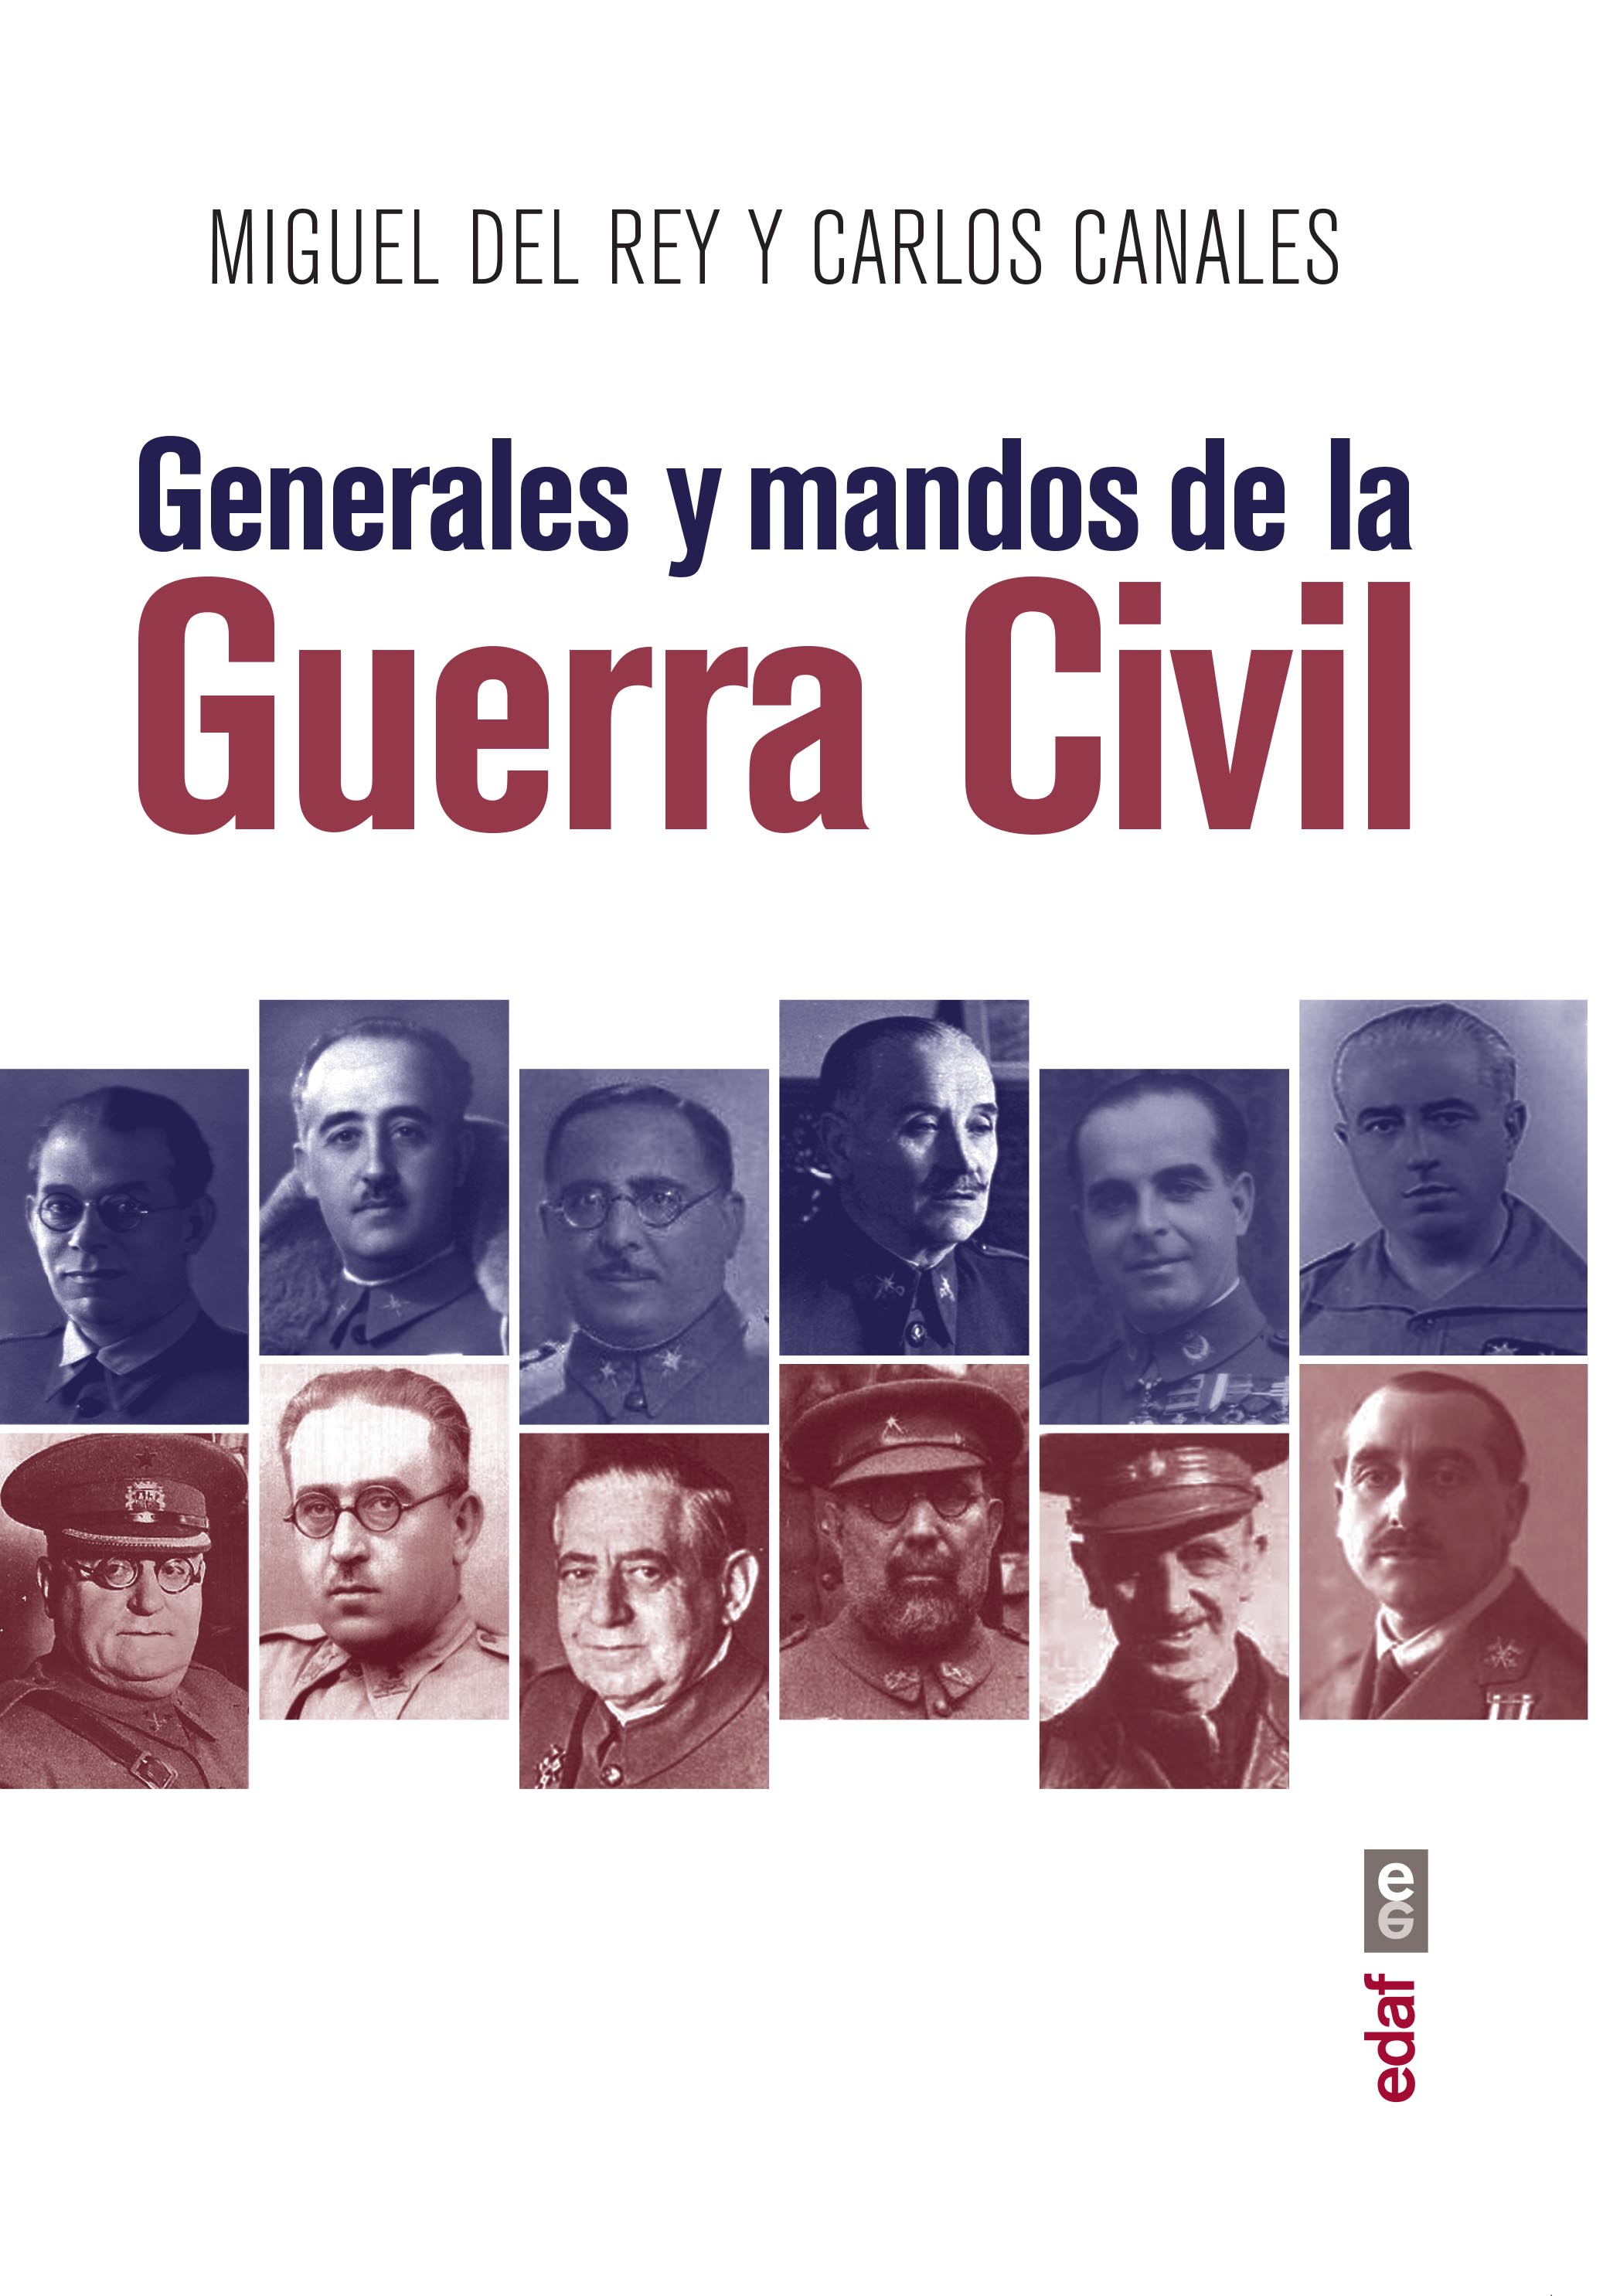 Presentación y coloquio en torno al libro Generales y mandos de la Guerra Civil